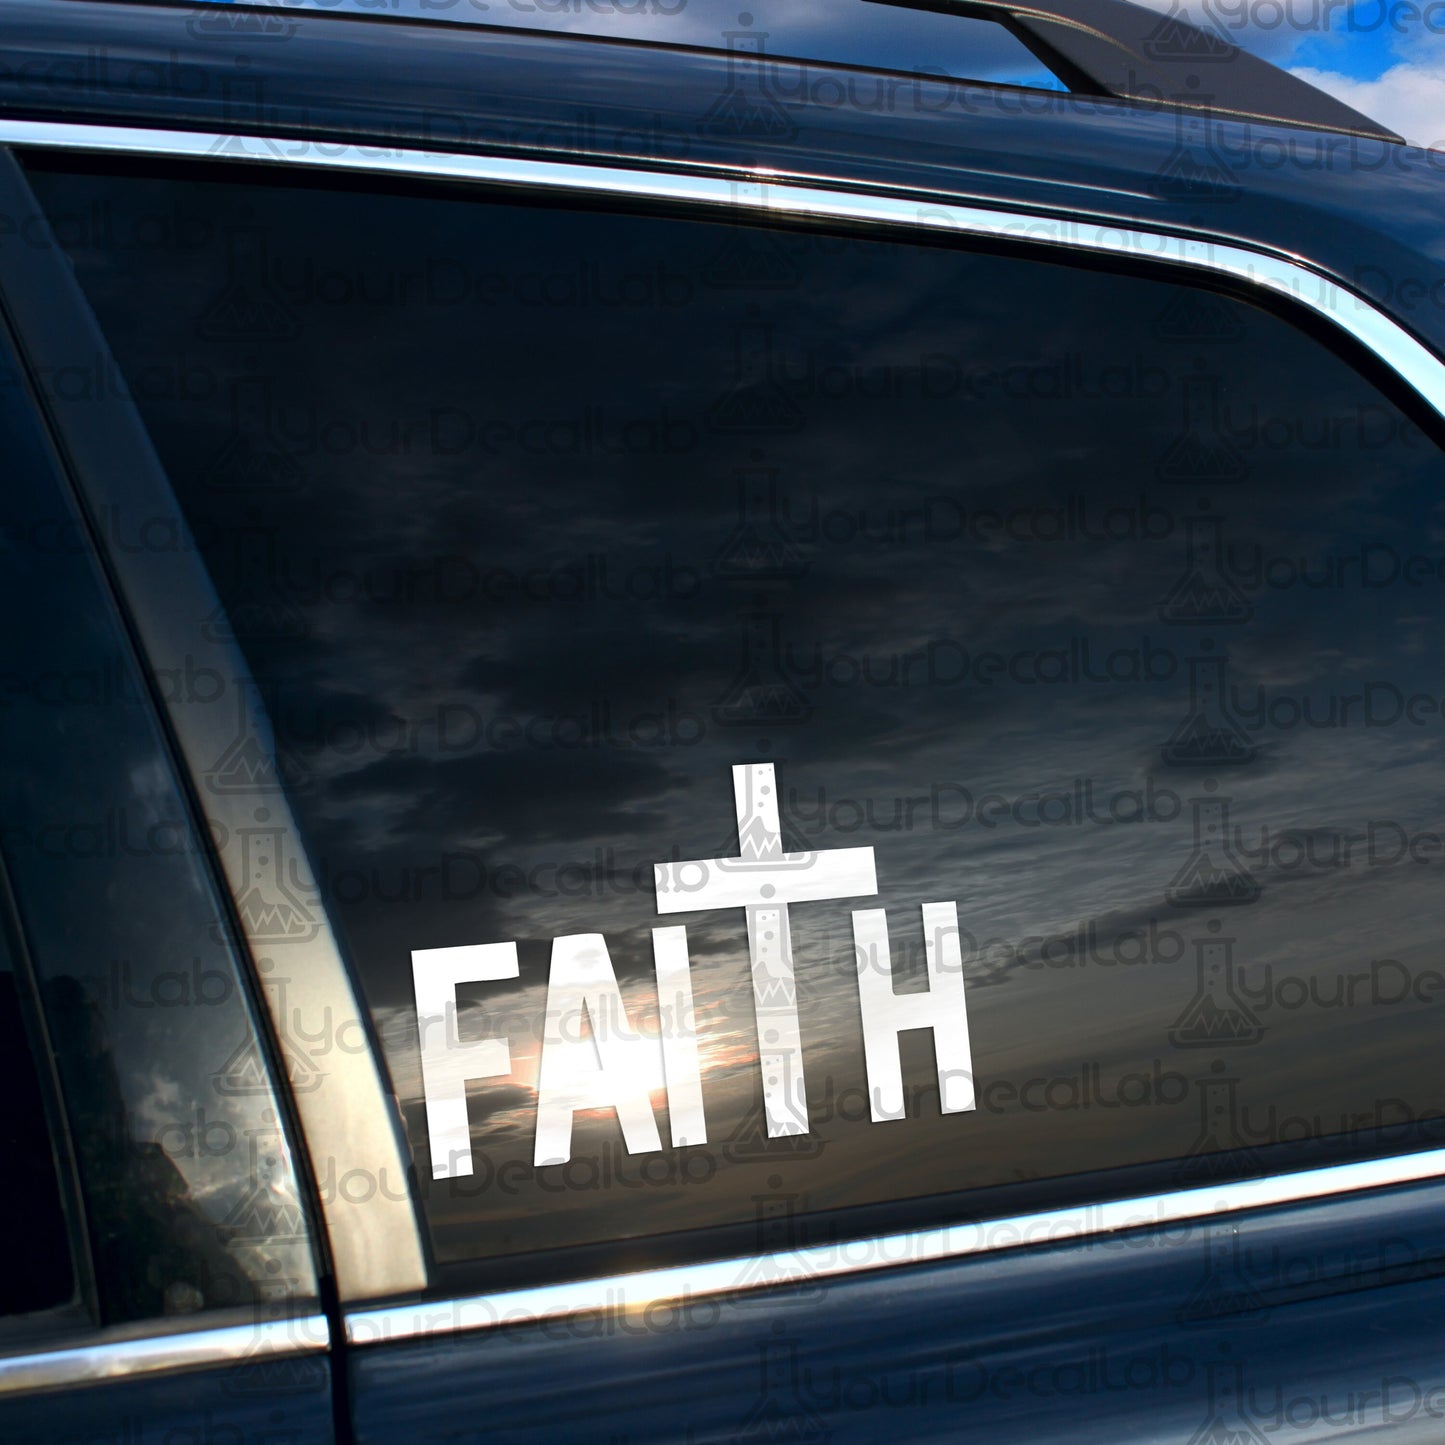 a car with a sticker that says faith